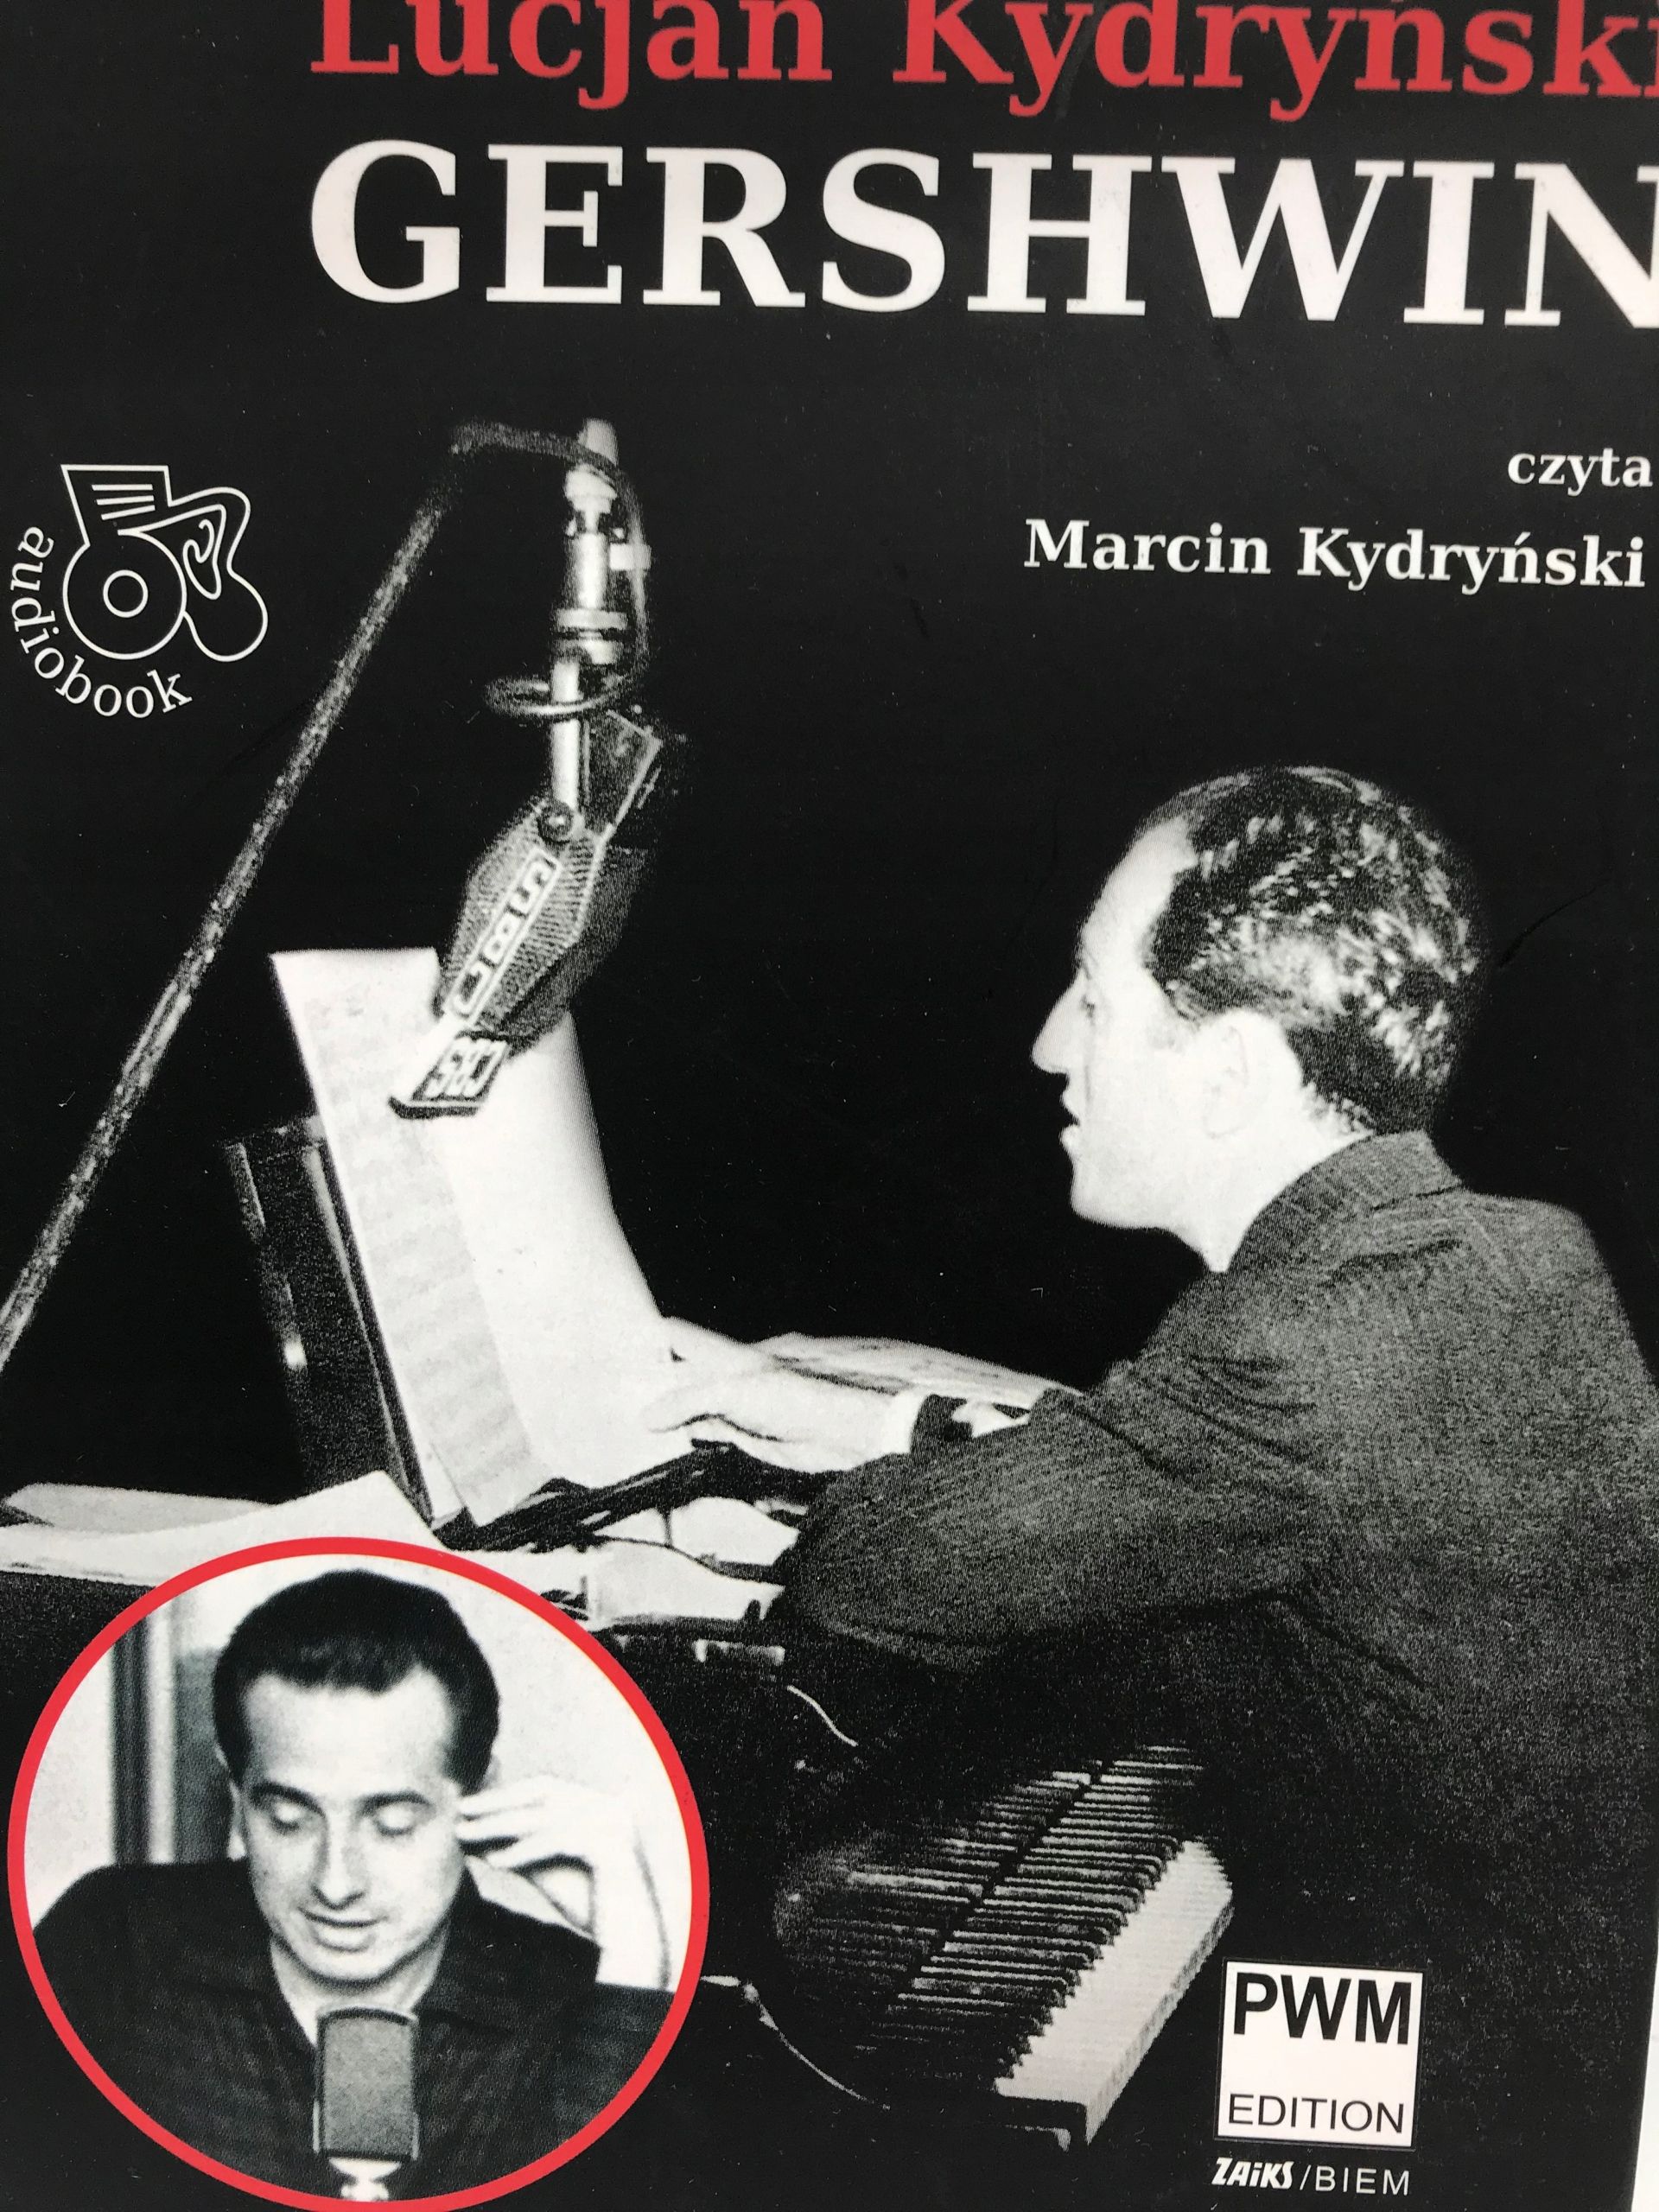 Cd - Lucjan Kydryński - Gershwin